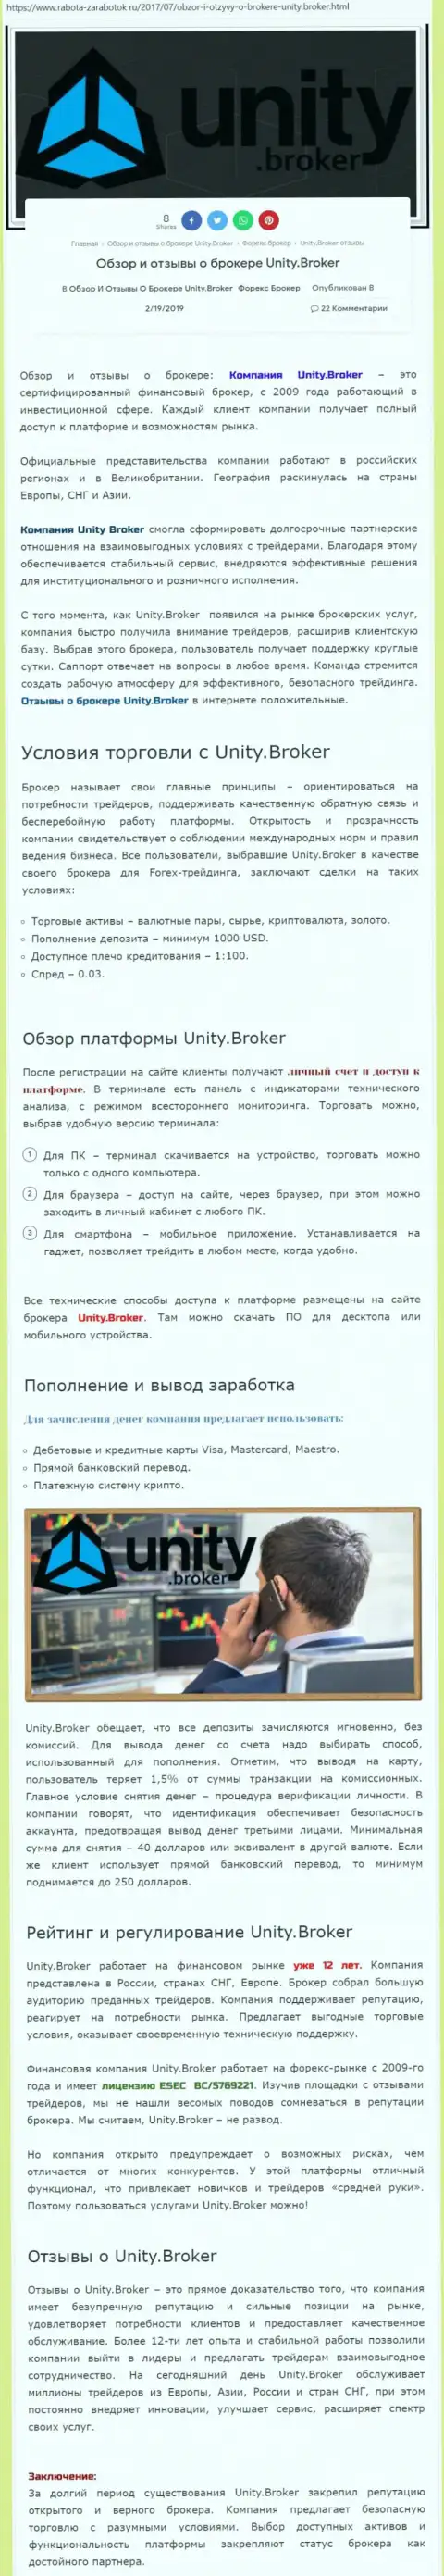 Обзорная информация Форекс организации ЮнитиБрокер на сайте rabota-zarabotok ru